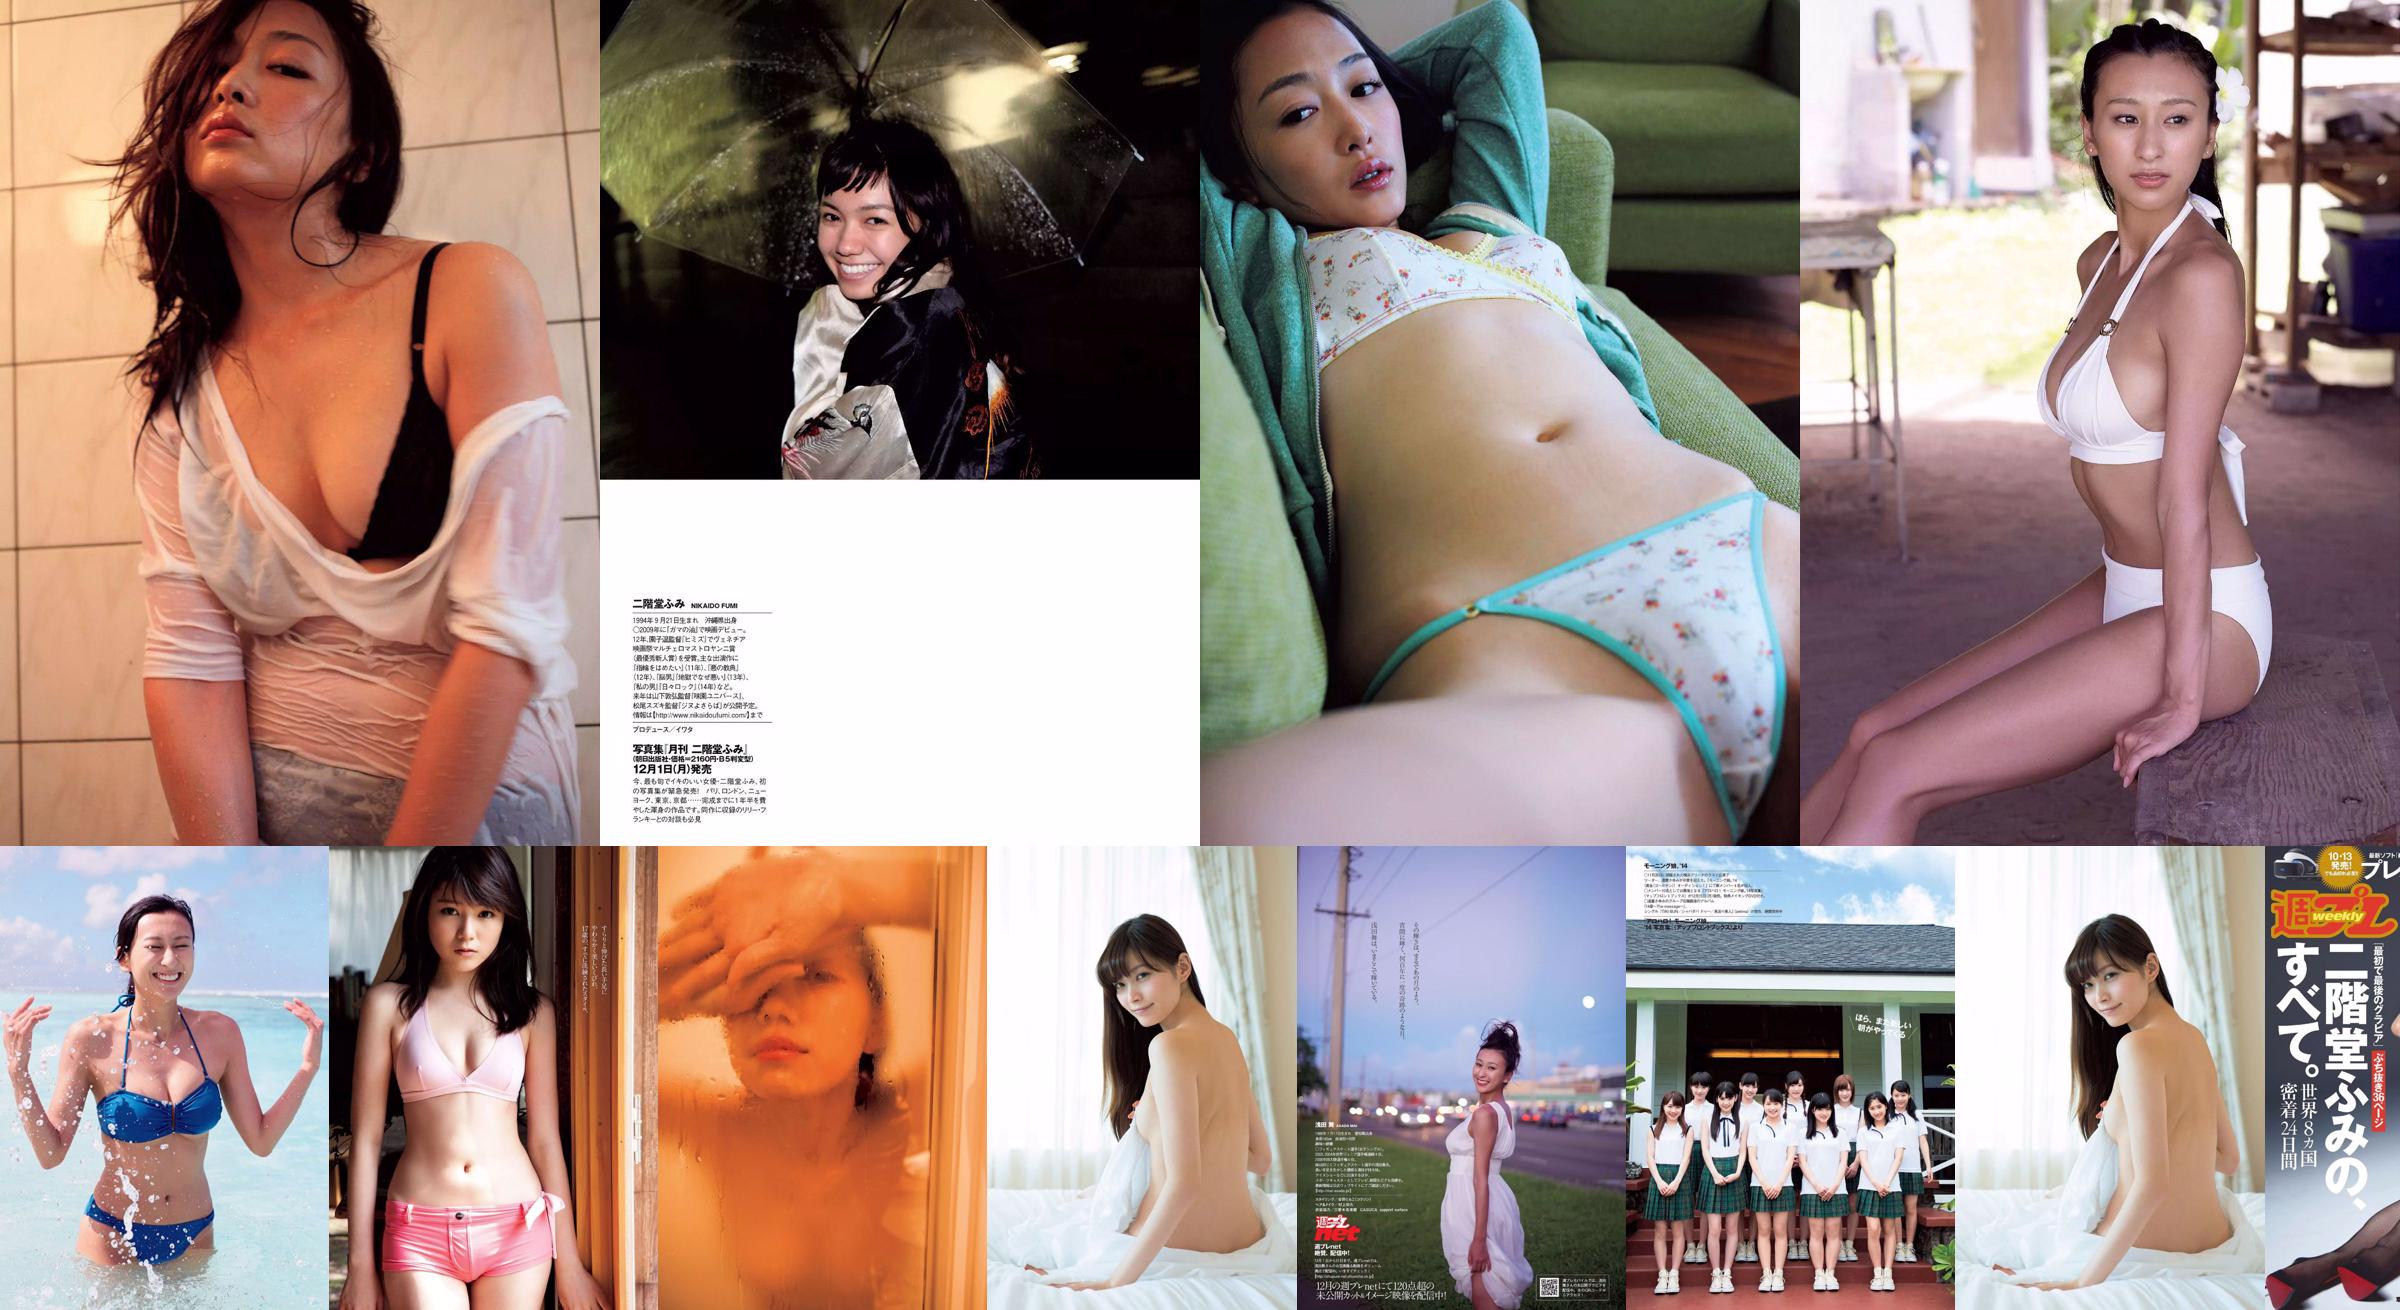 Fumi Nikaido [Wöchentlicher Playboy] 2016 No.43 Photo Magazine No.38cb9c Seite 1